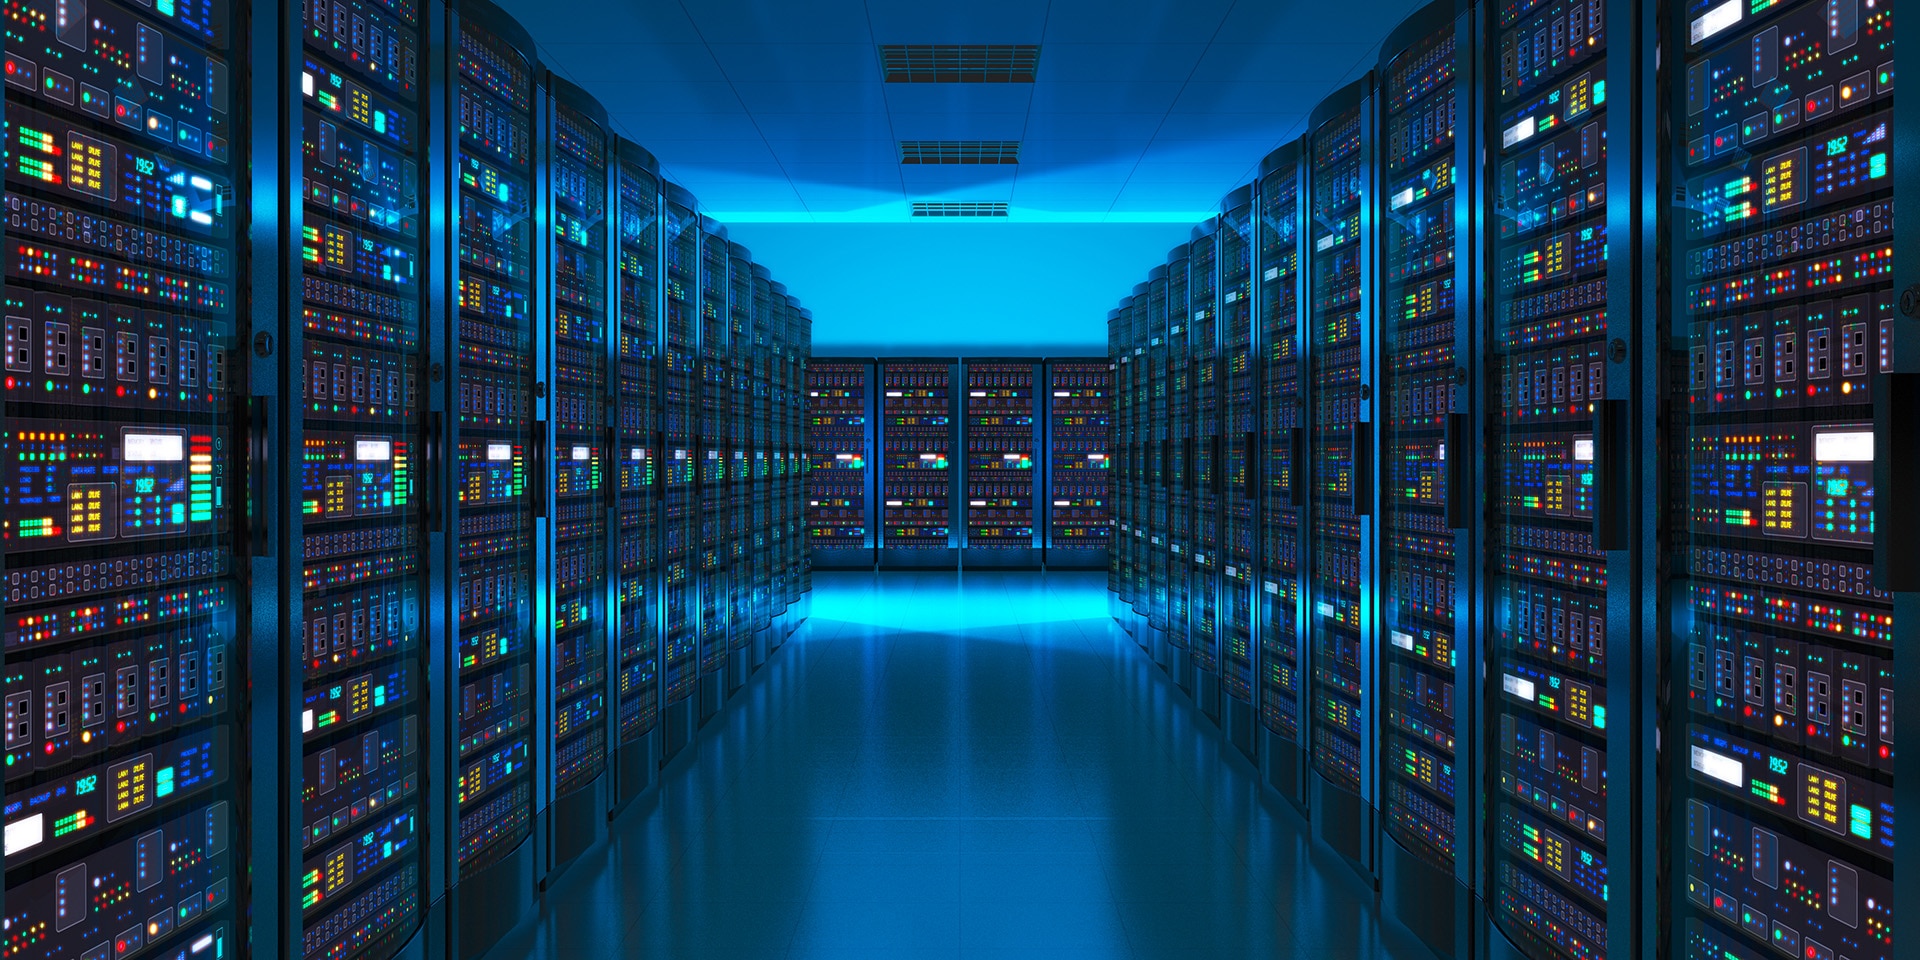 Entriamo in una stanza buia, con illuminazione blu, divisa in corsie da una moltitudine di server dove vengono memorizzati i dati digitali.